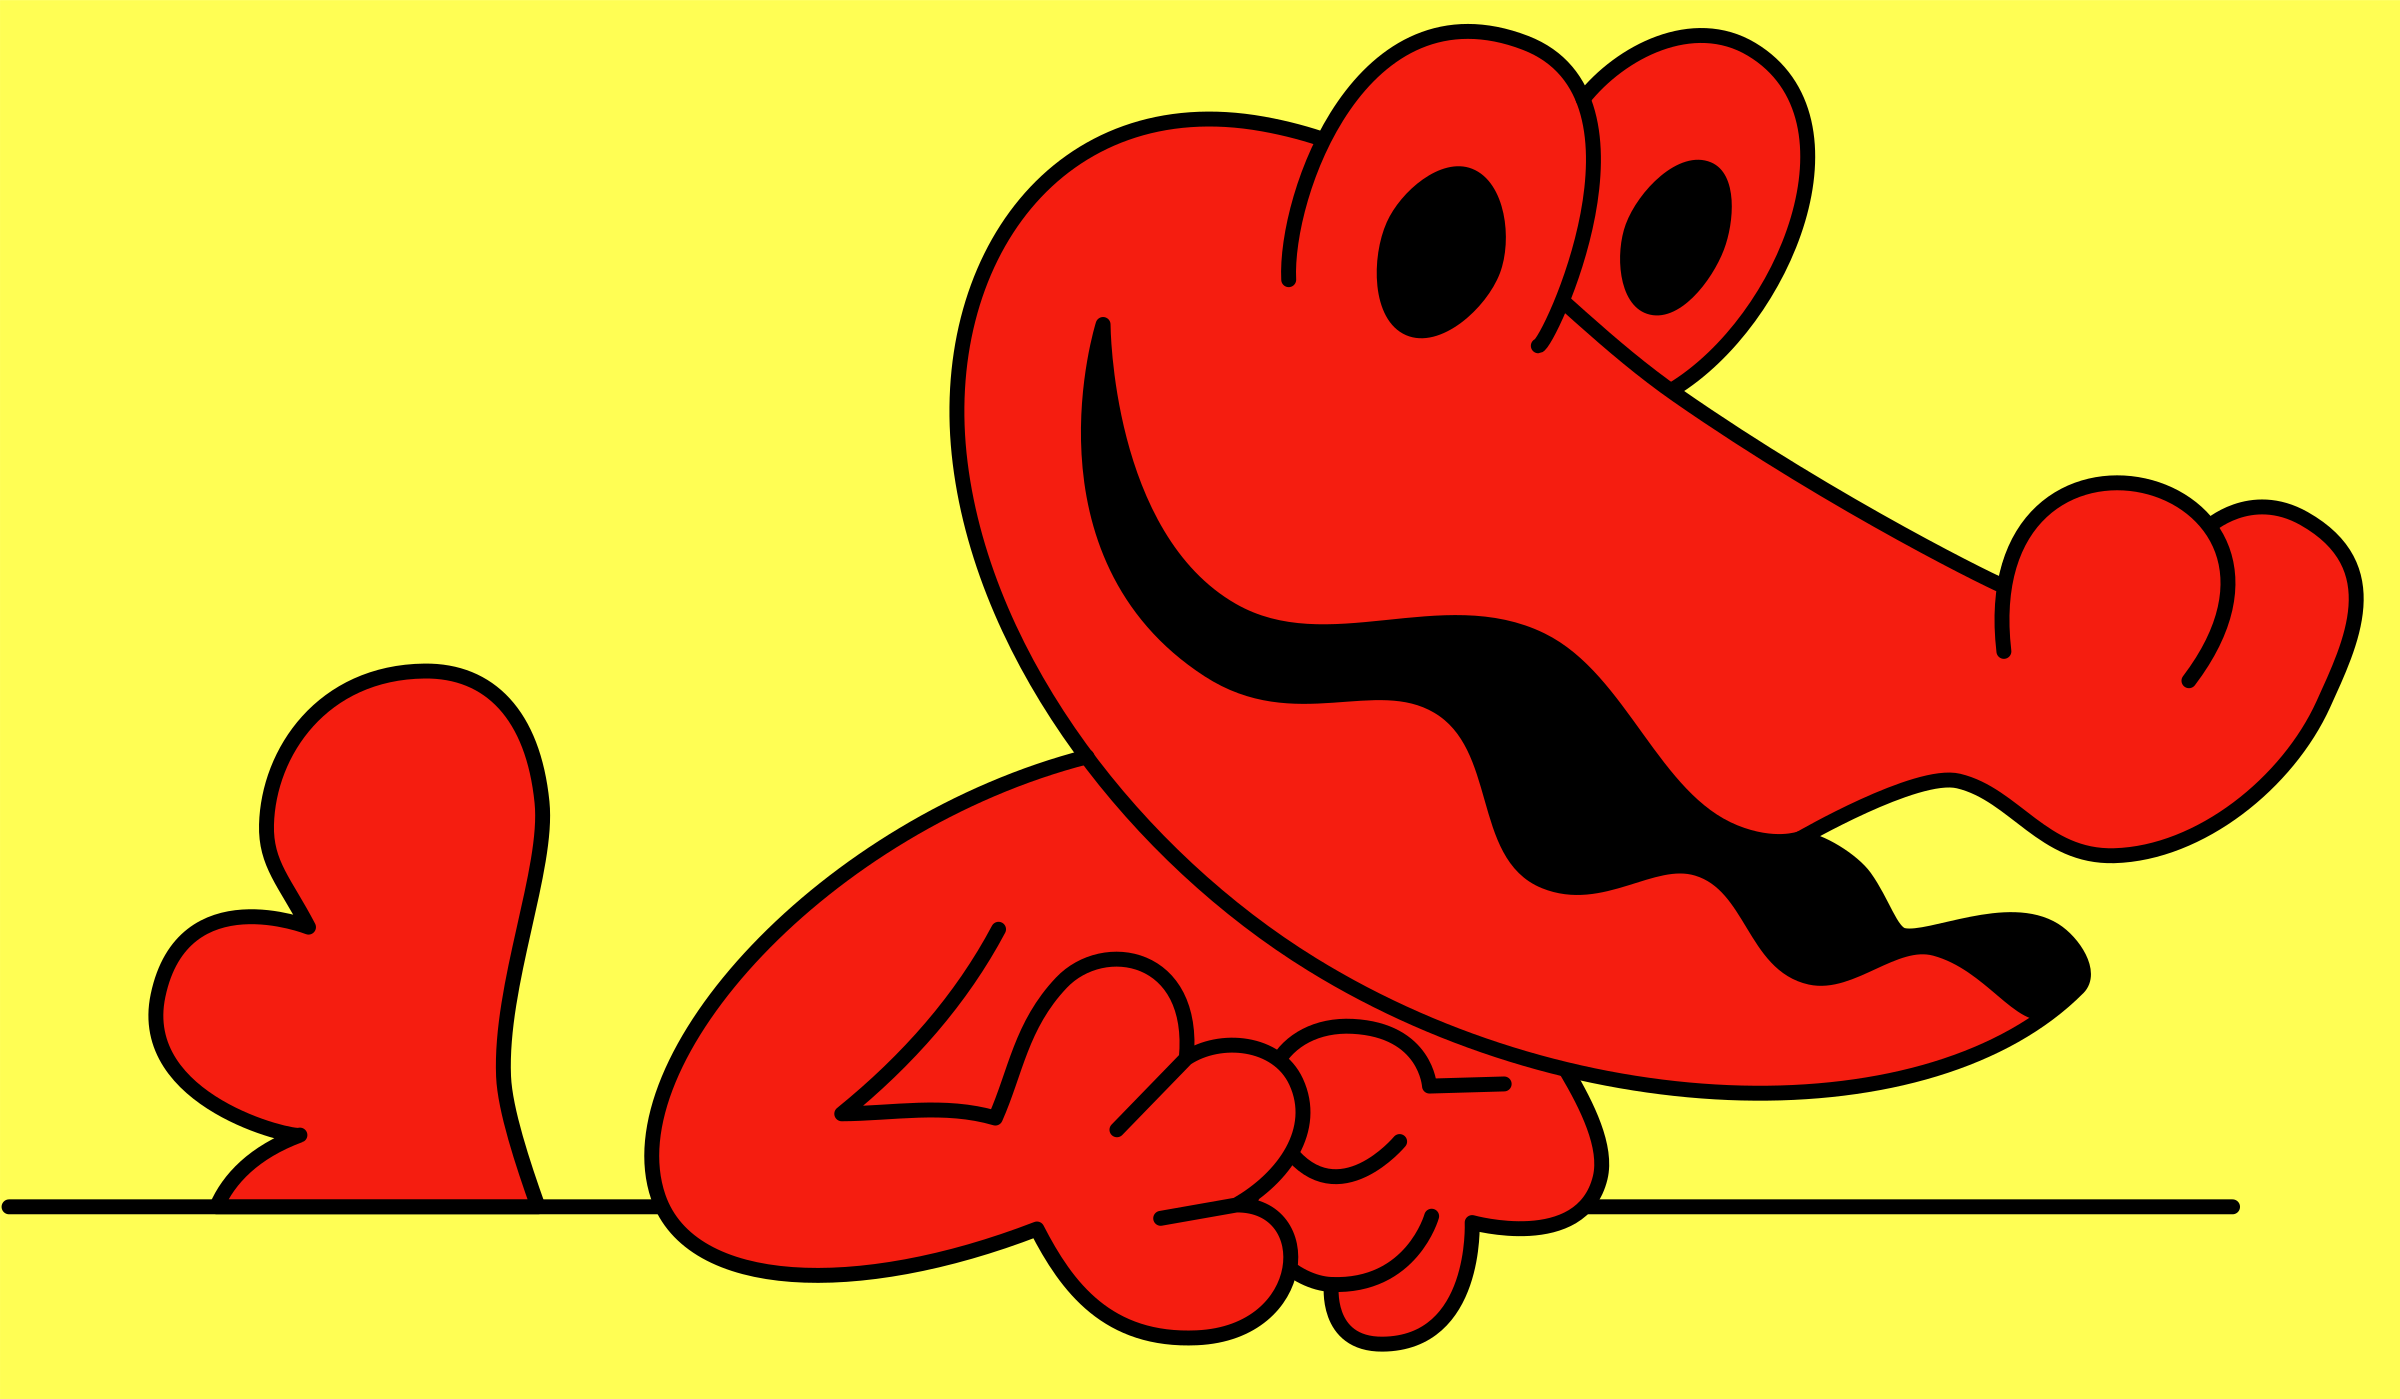 Clipart - Mascot of Krokodil magazine